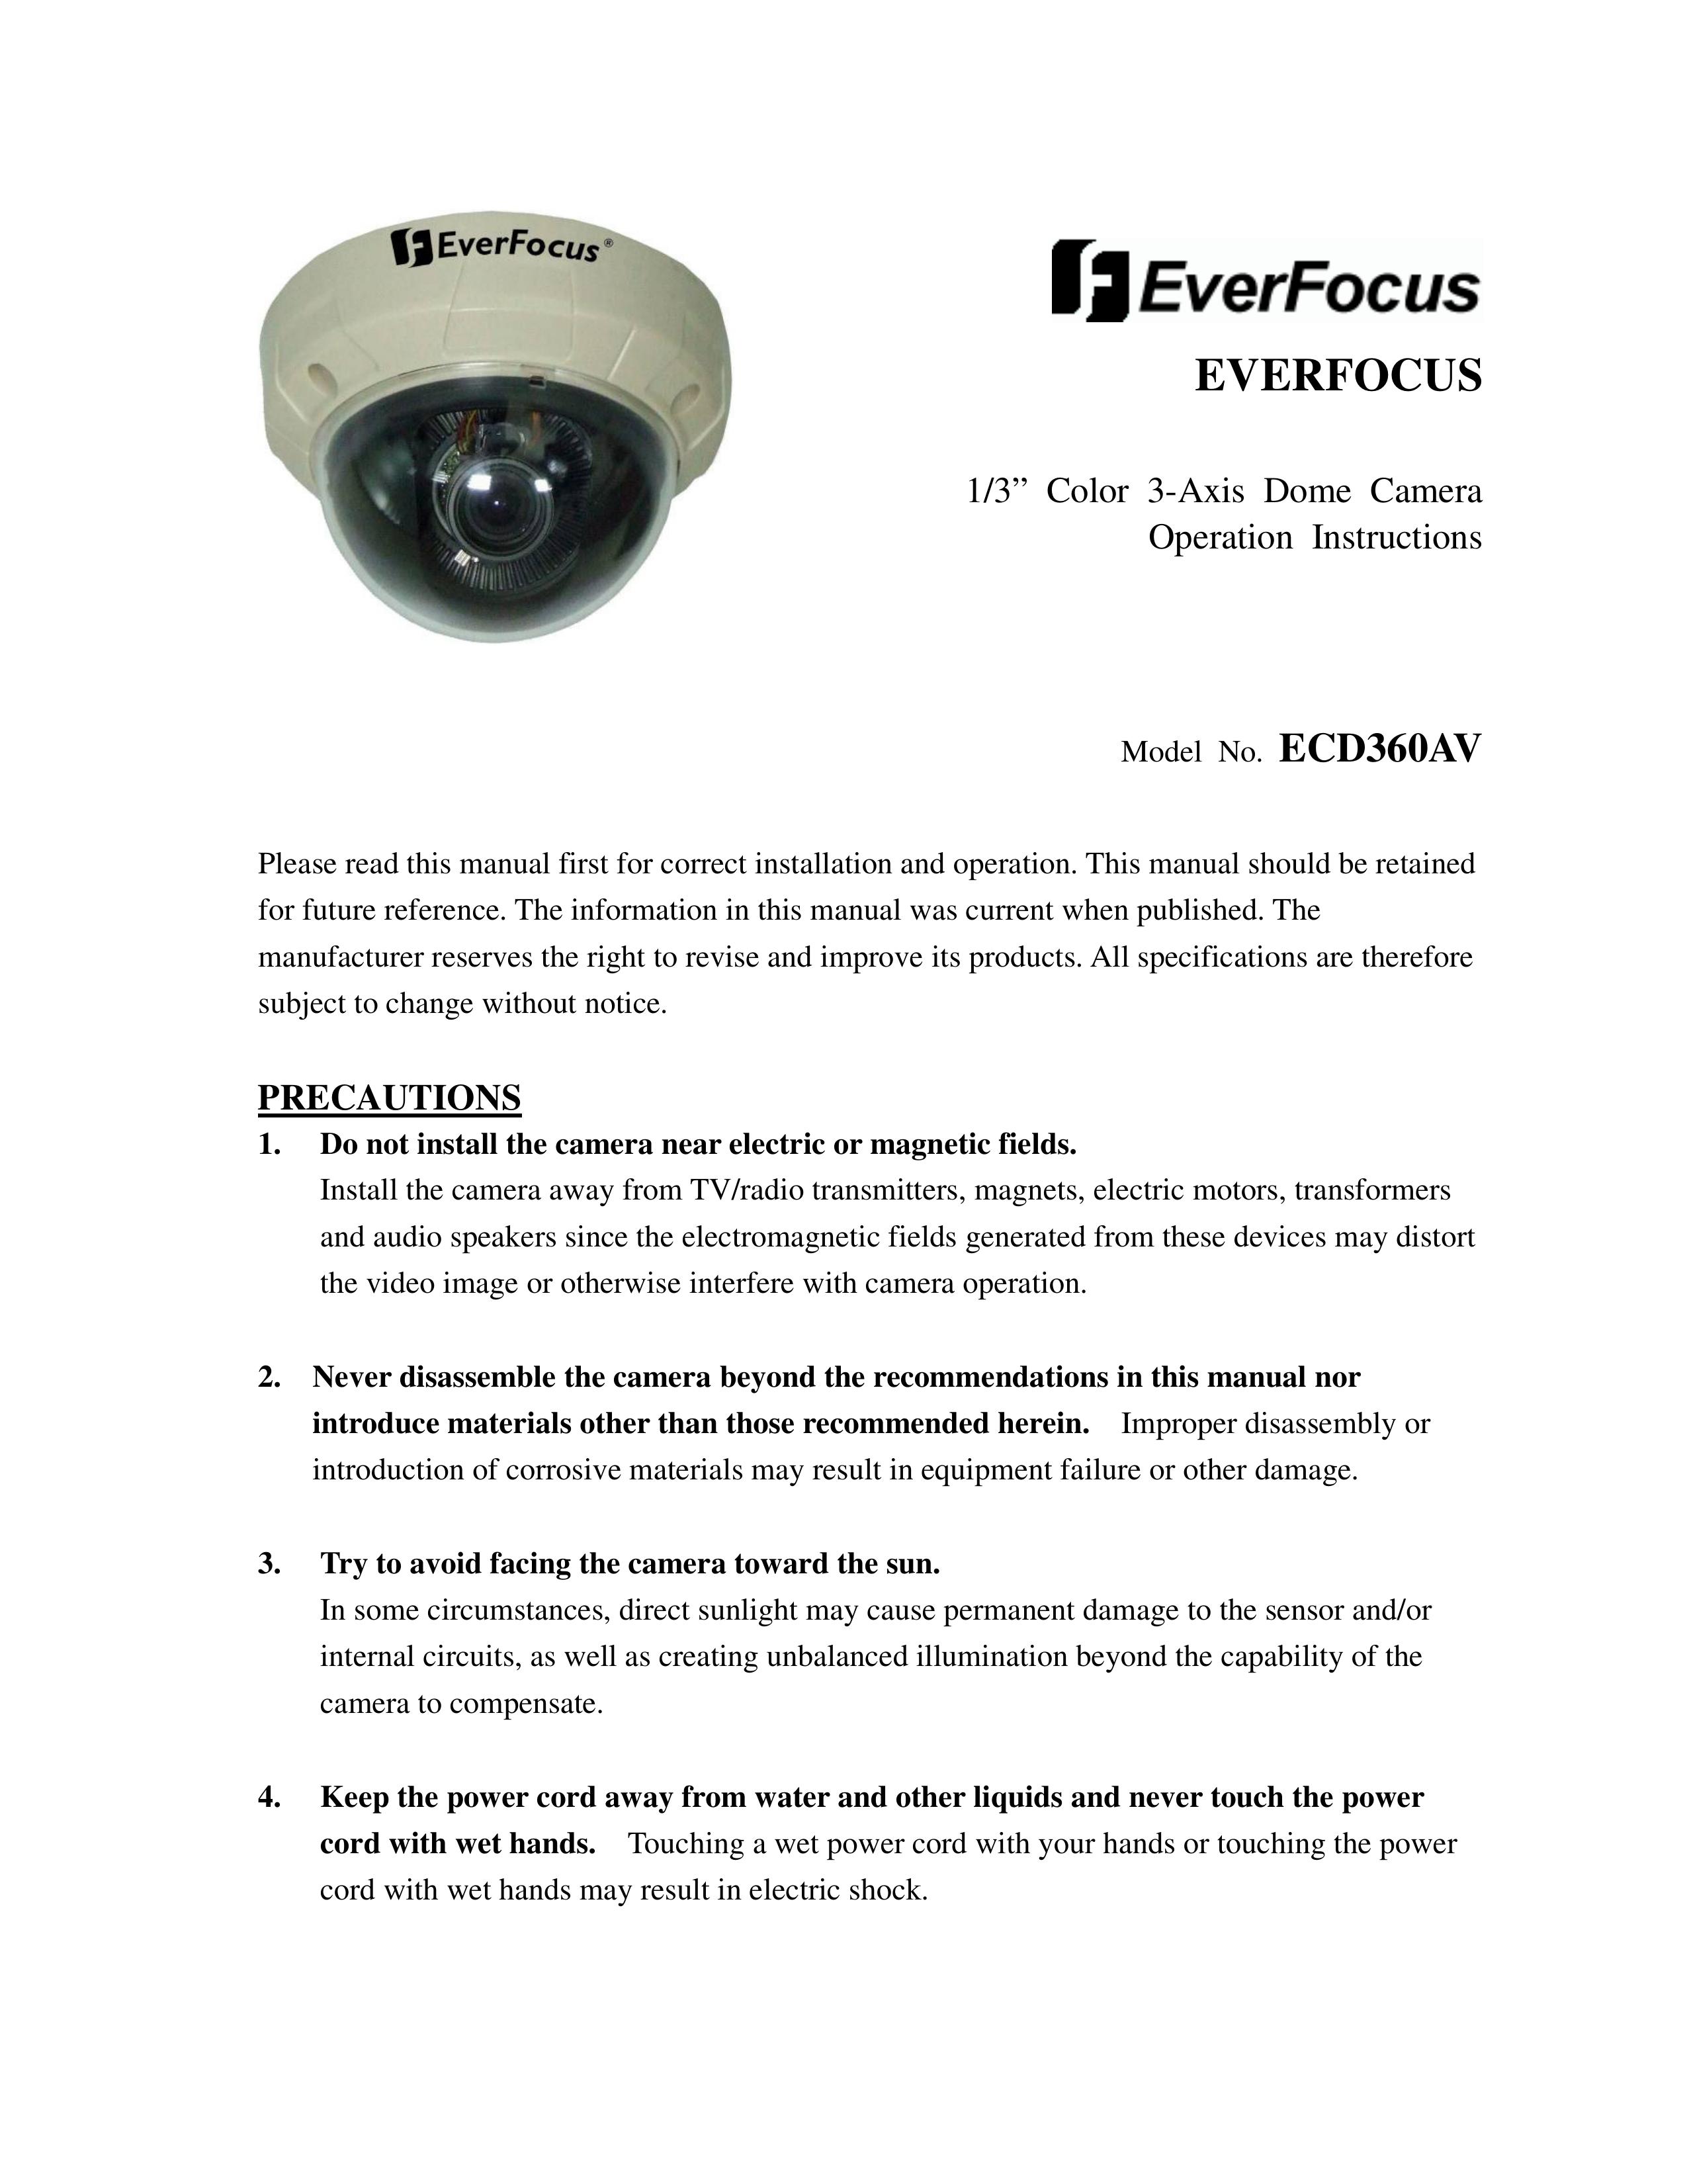 EverFocus ECD360AV Security Camera User Manual